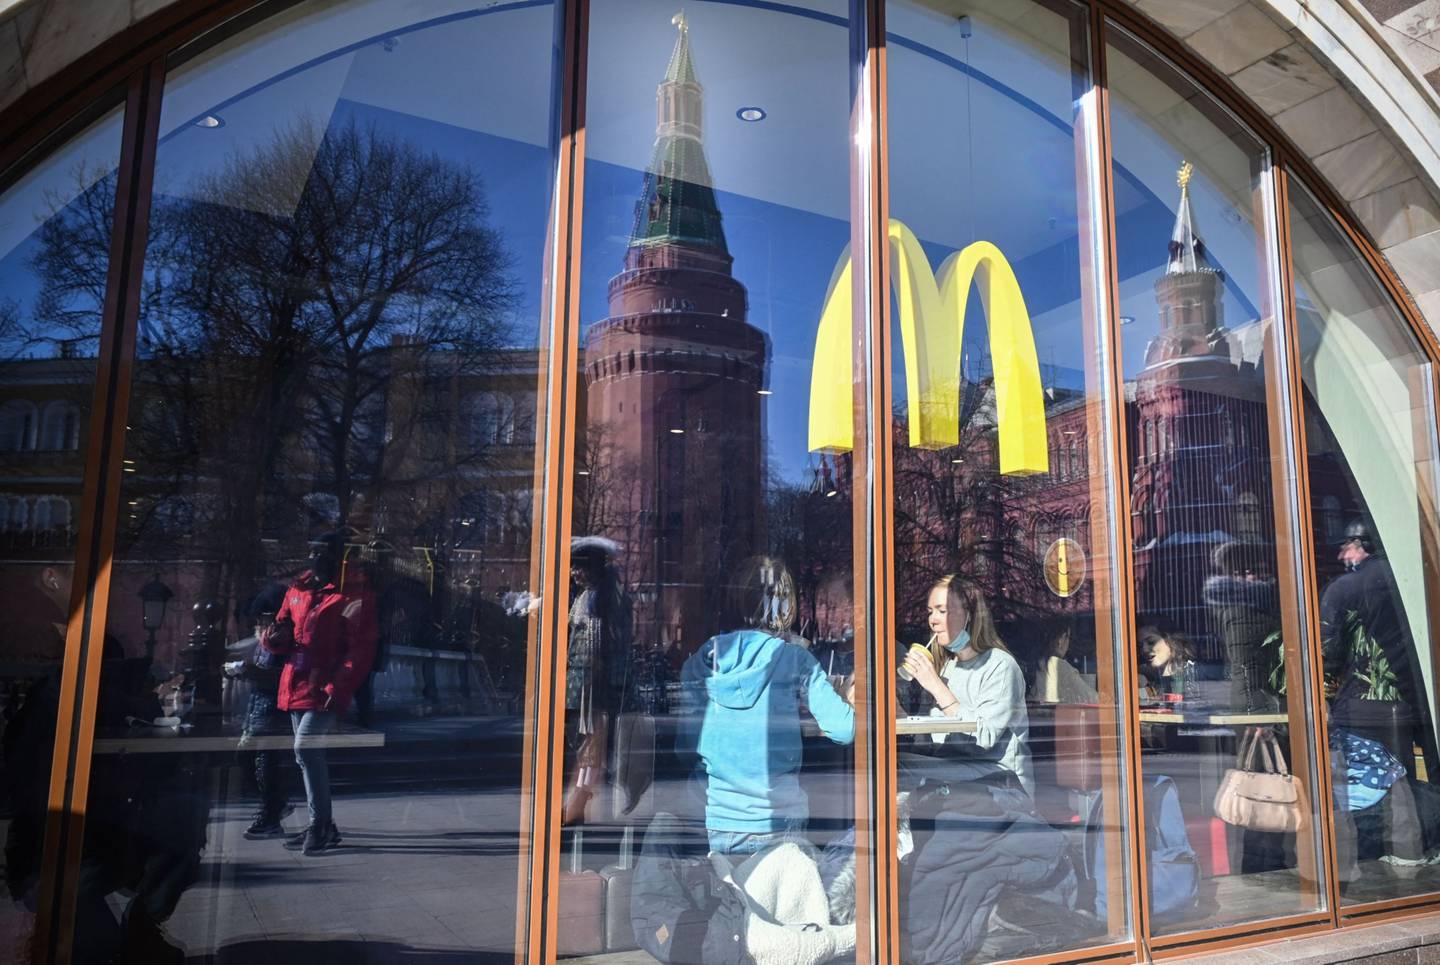 Personas comienod en un restaurante de McDonald's en Moscow. Source: -/AFP/Getty Images